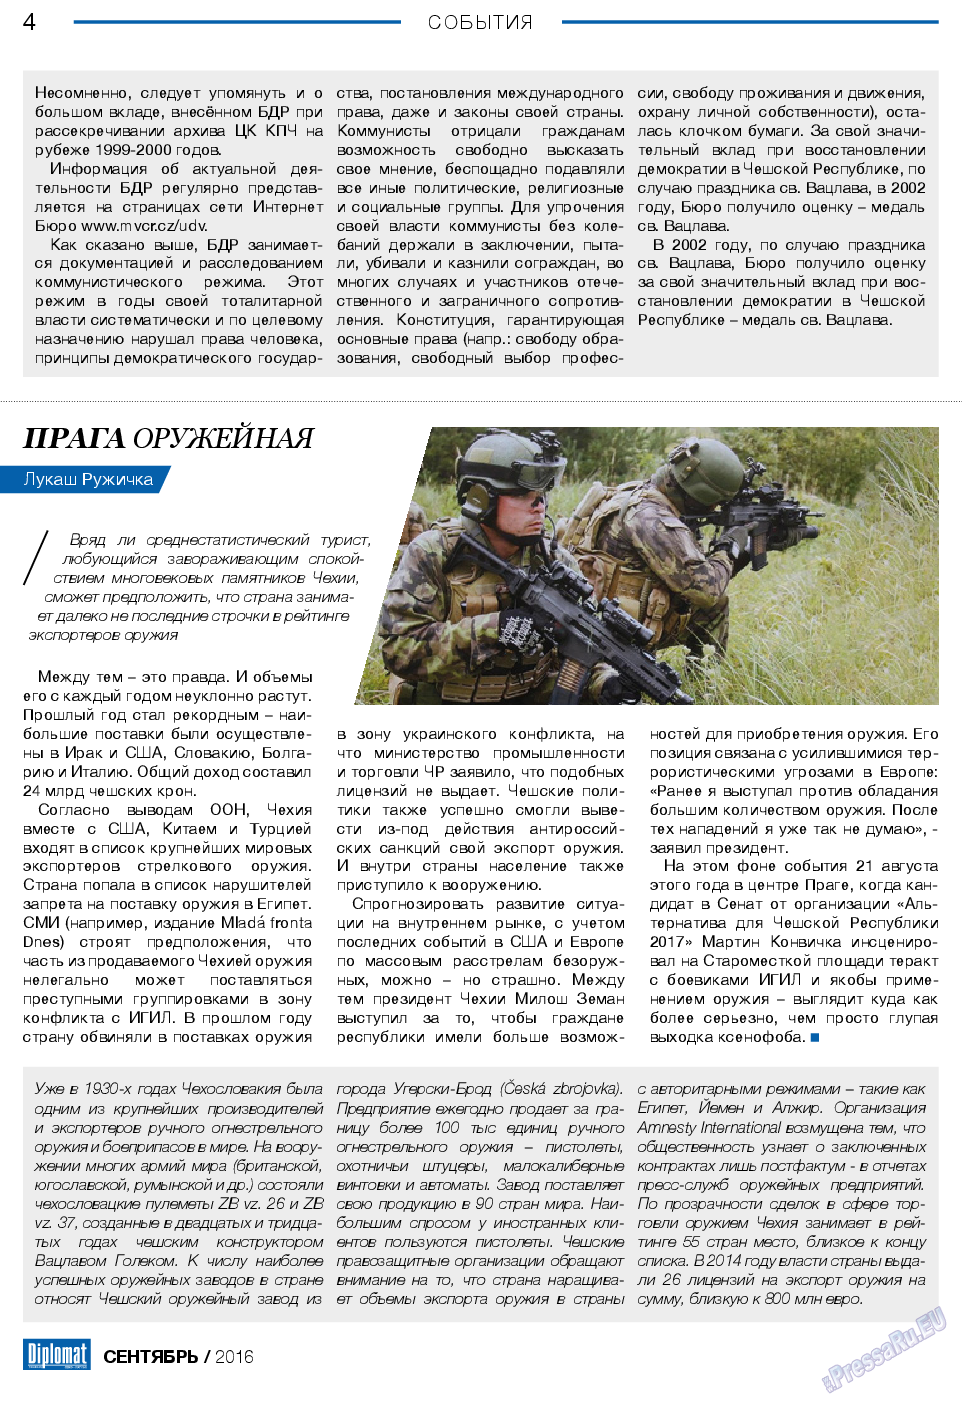 Diplomat, газета. 2016 №84 стр.4